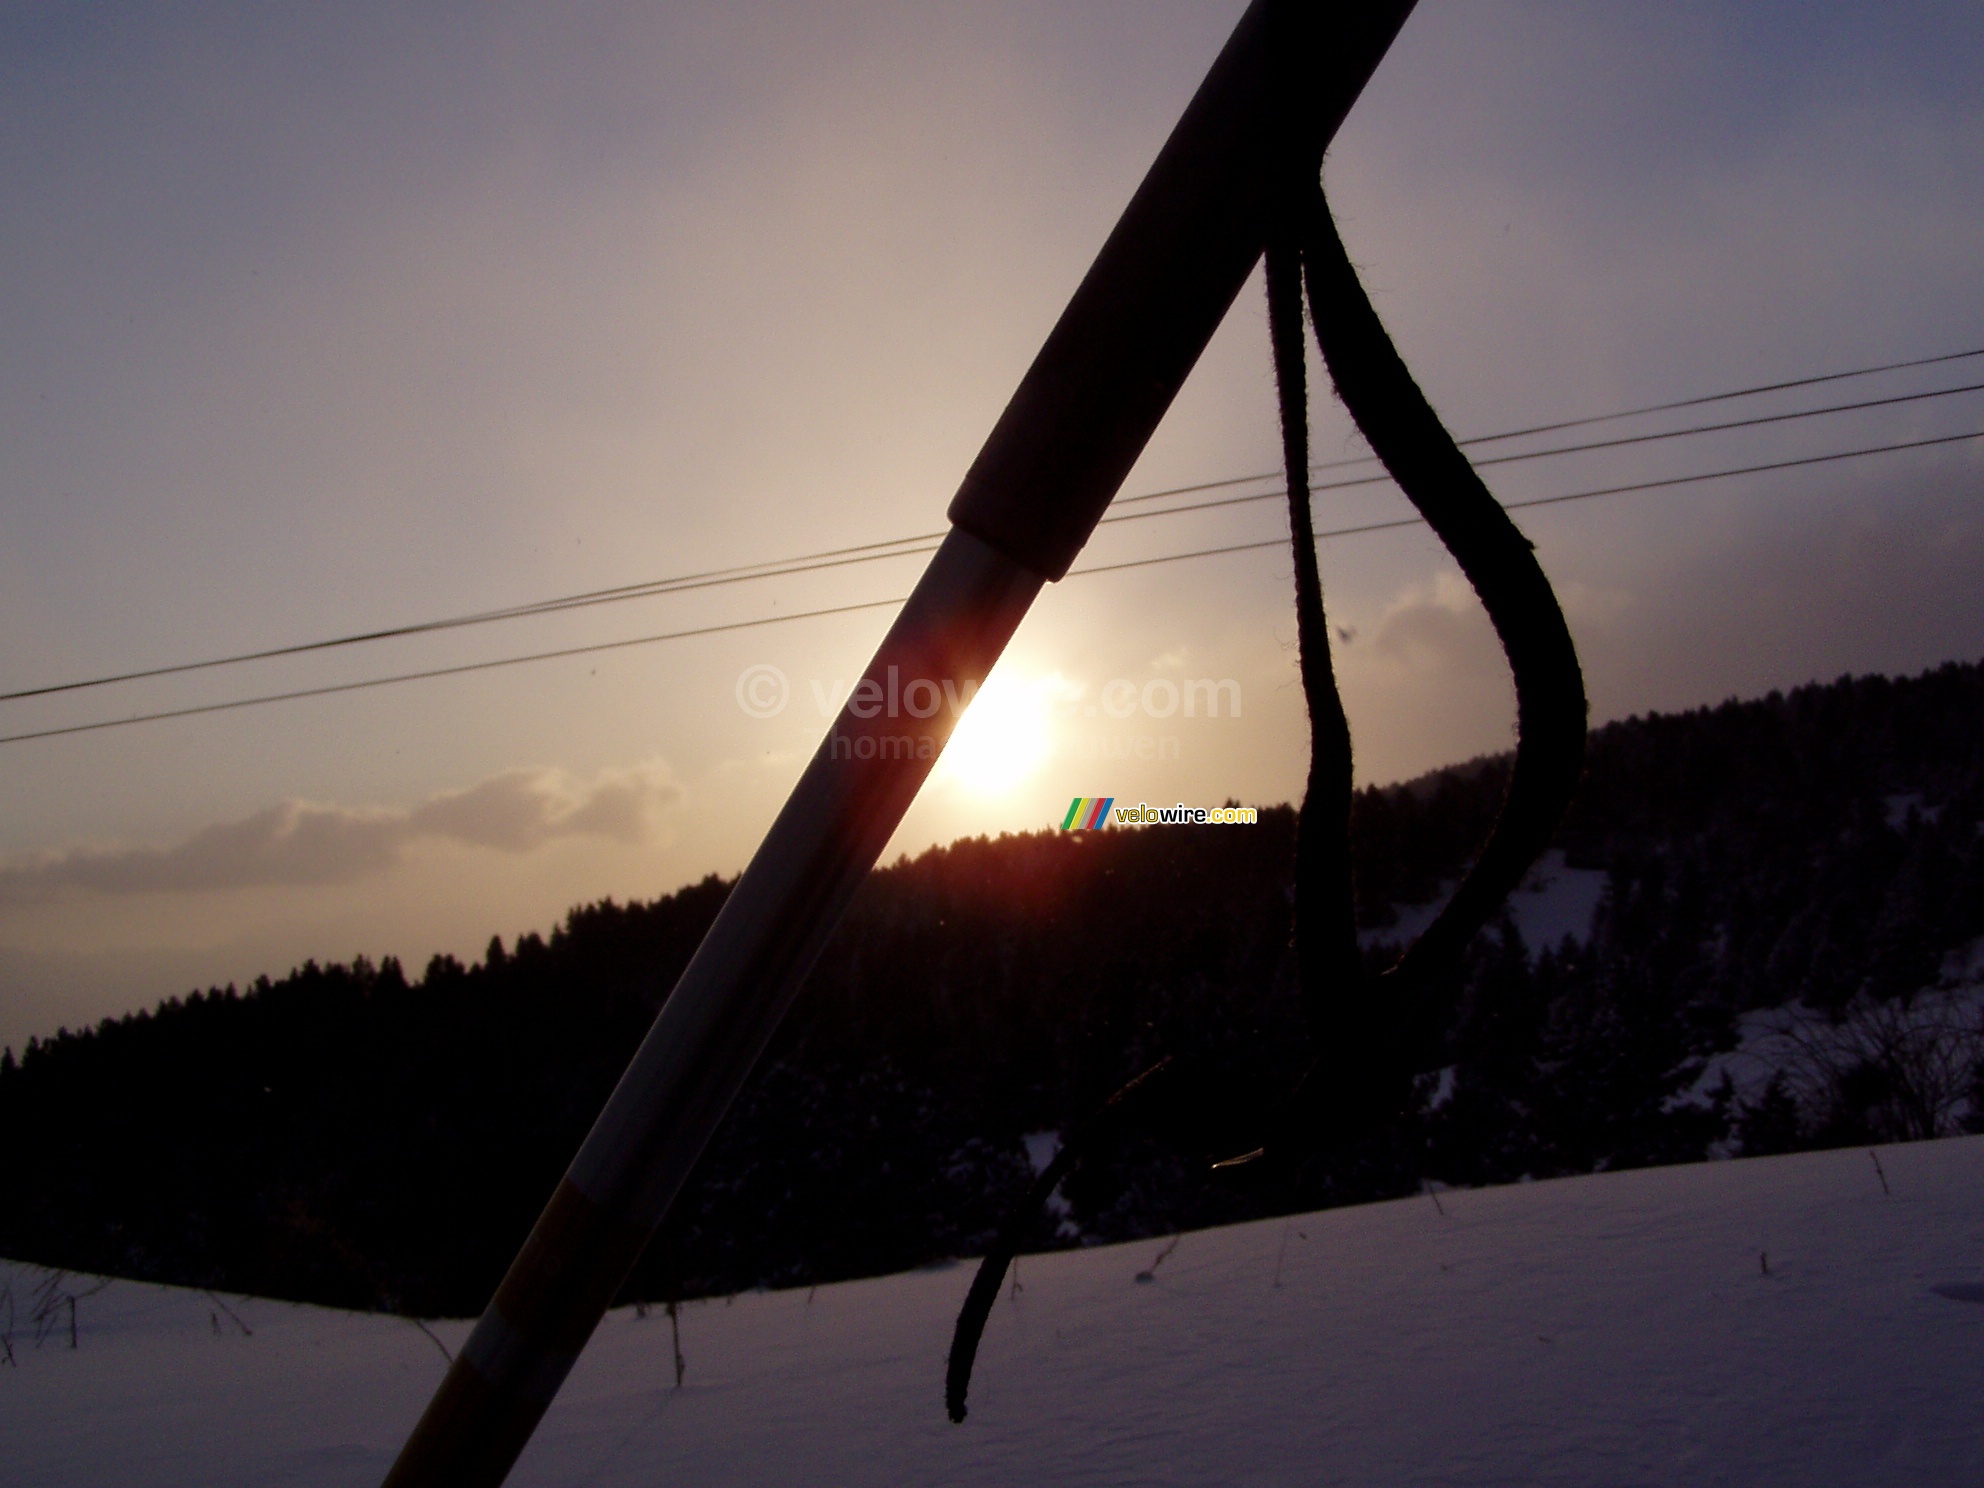 Le soleil qui se couche derrire le baton de ski